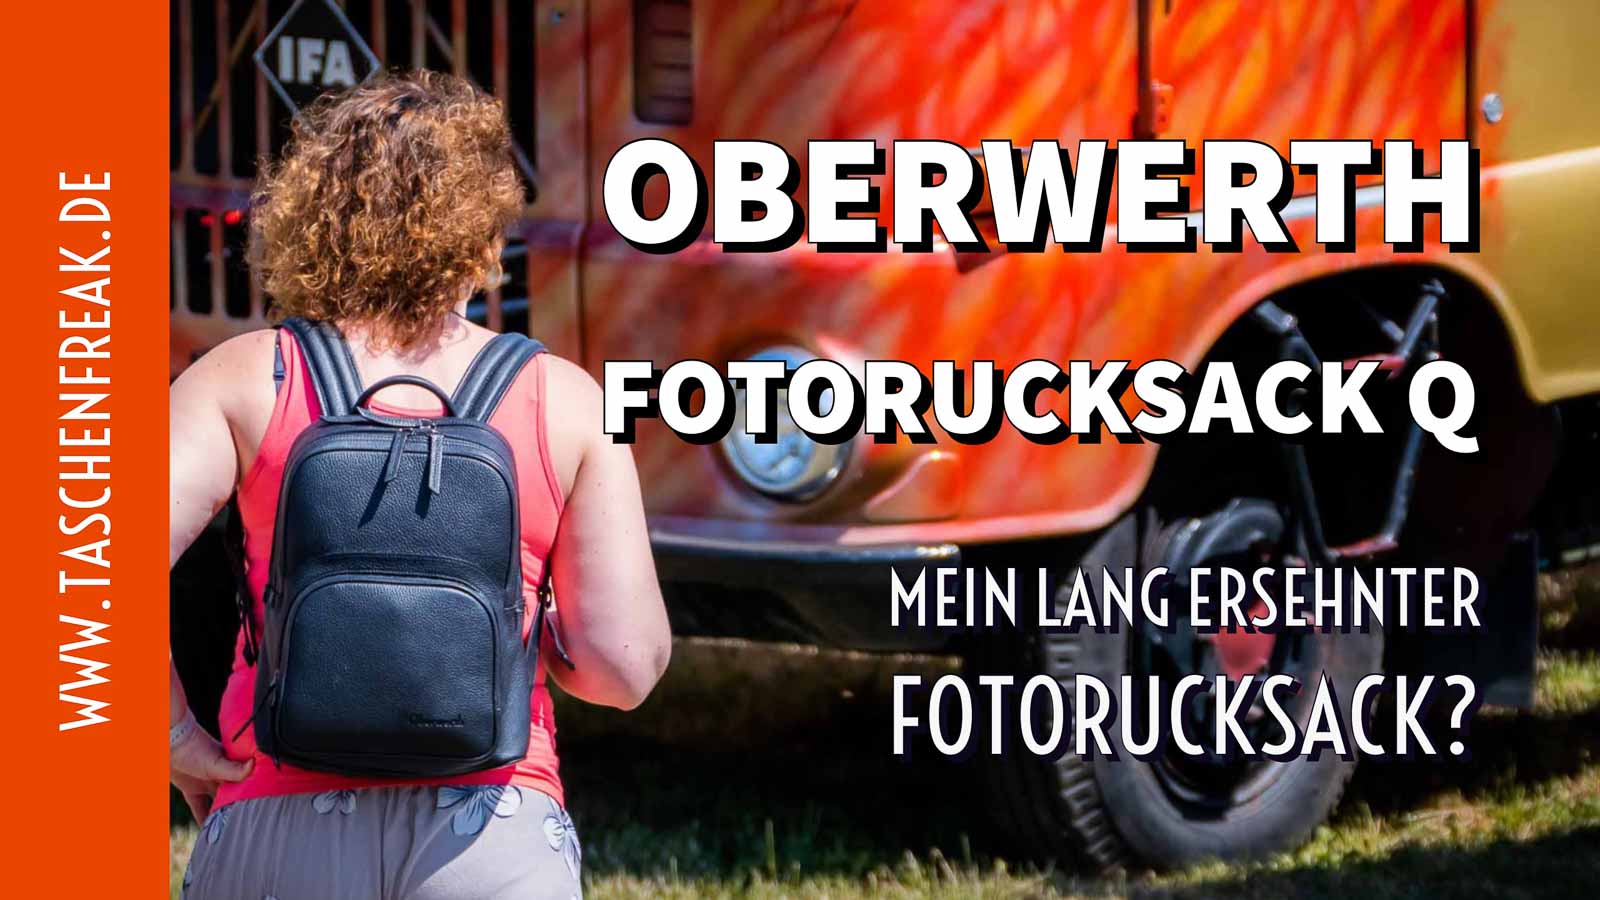 Oberwerth Fotorucksack Q